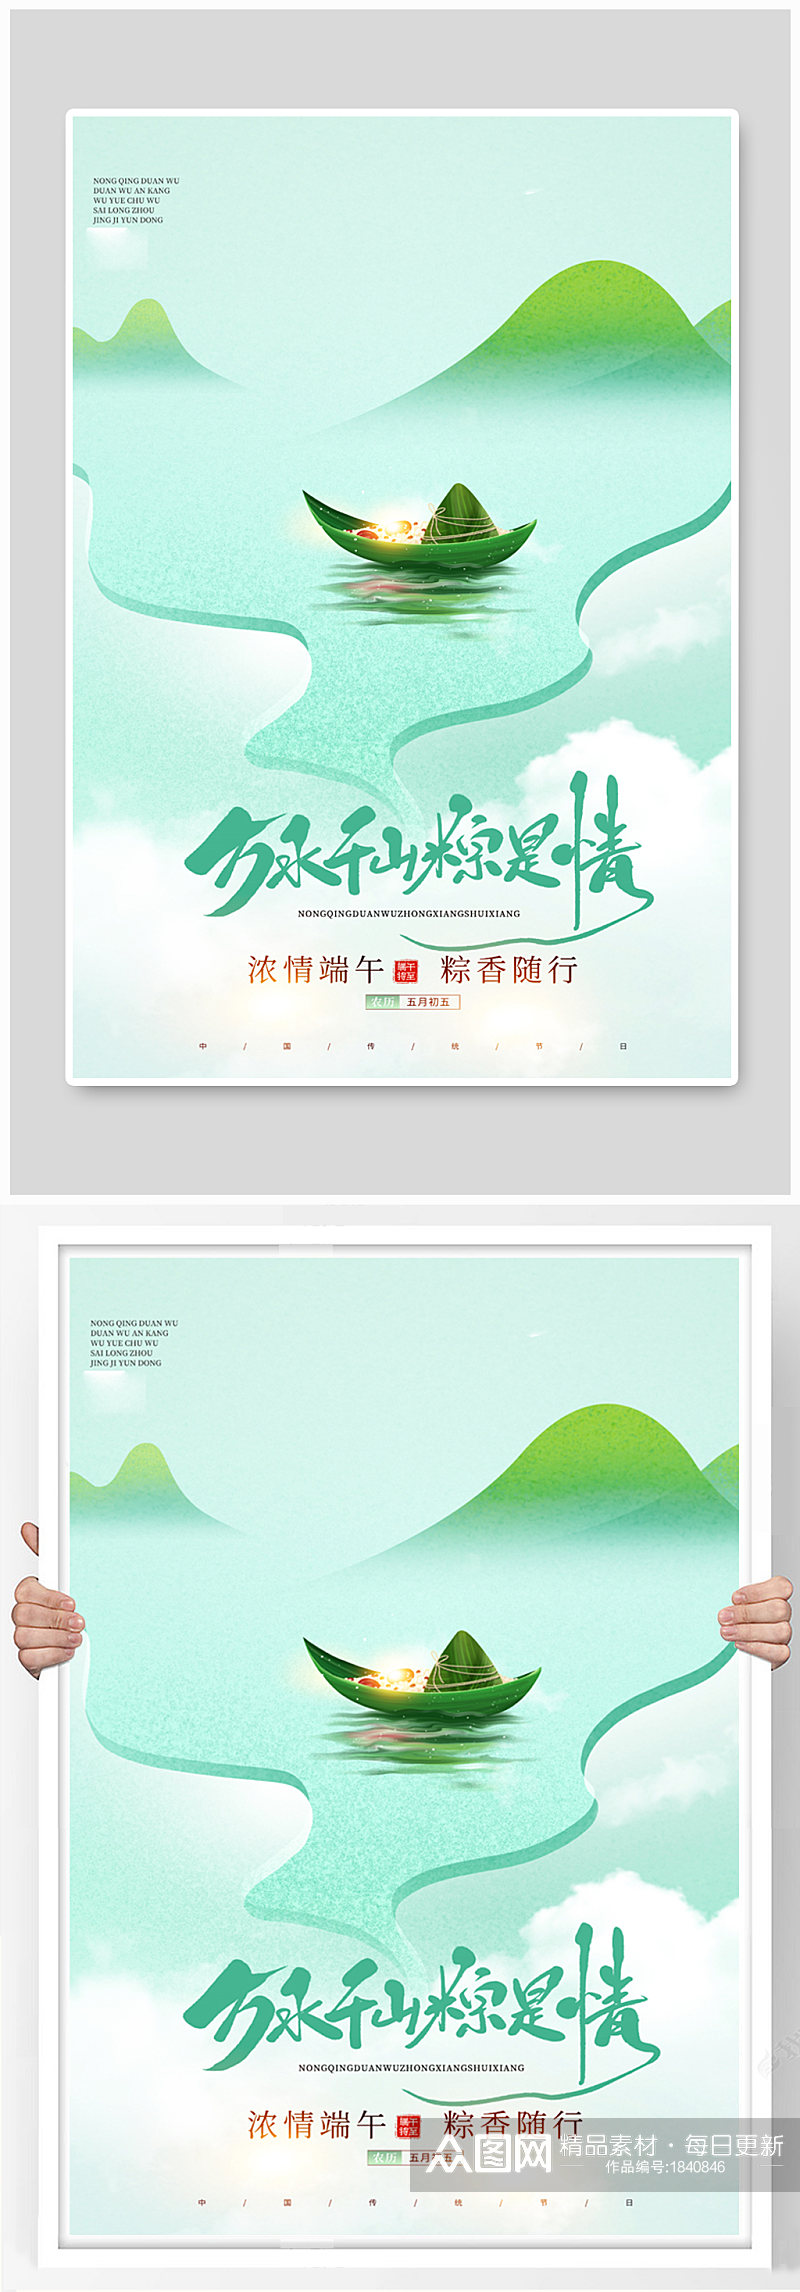 中国风大气简洁端午节创意海报素材